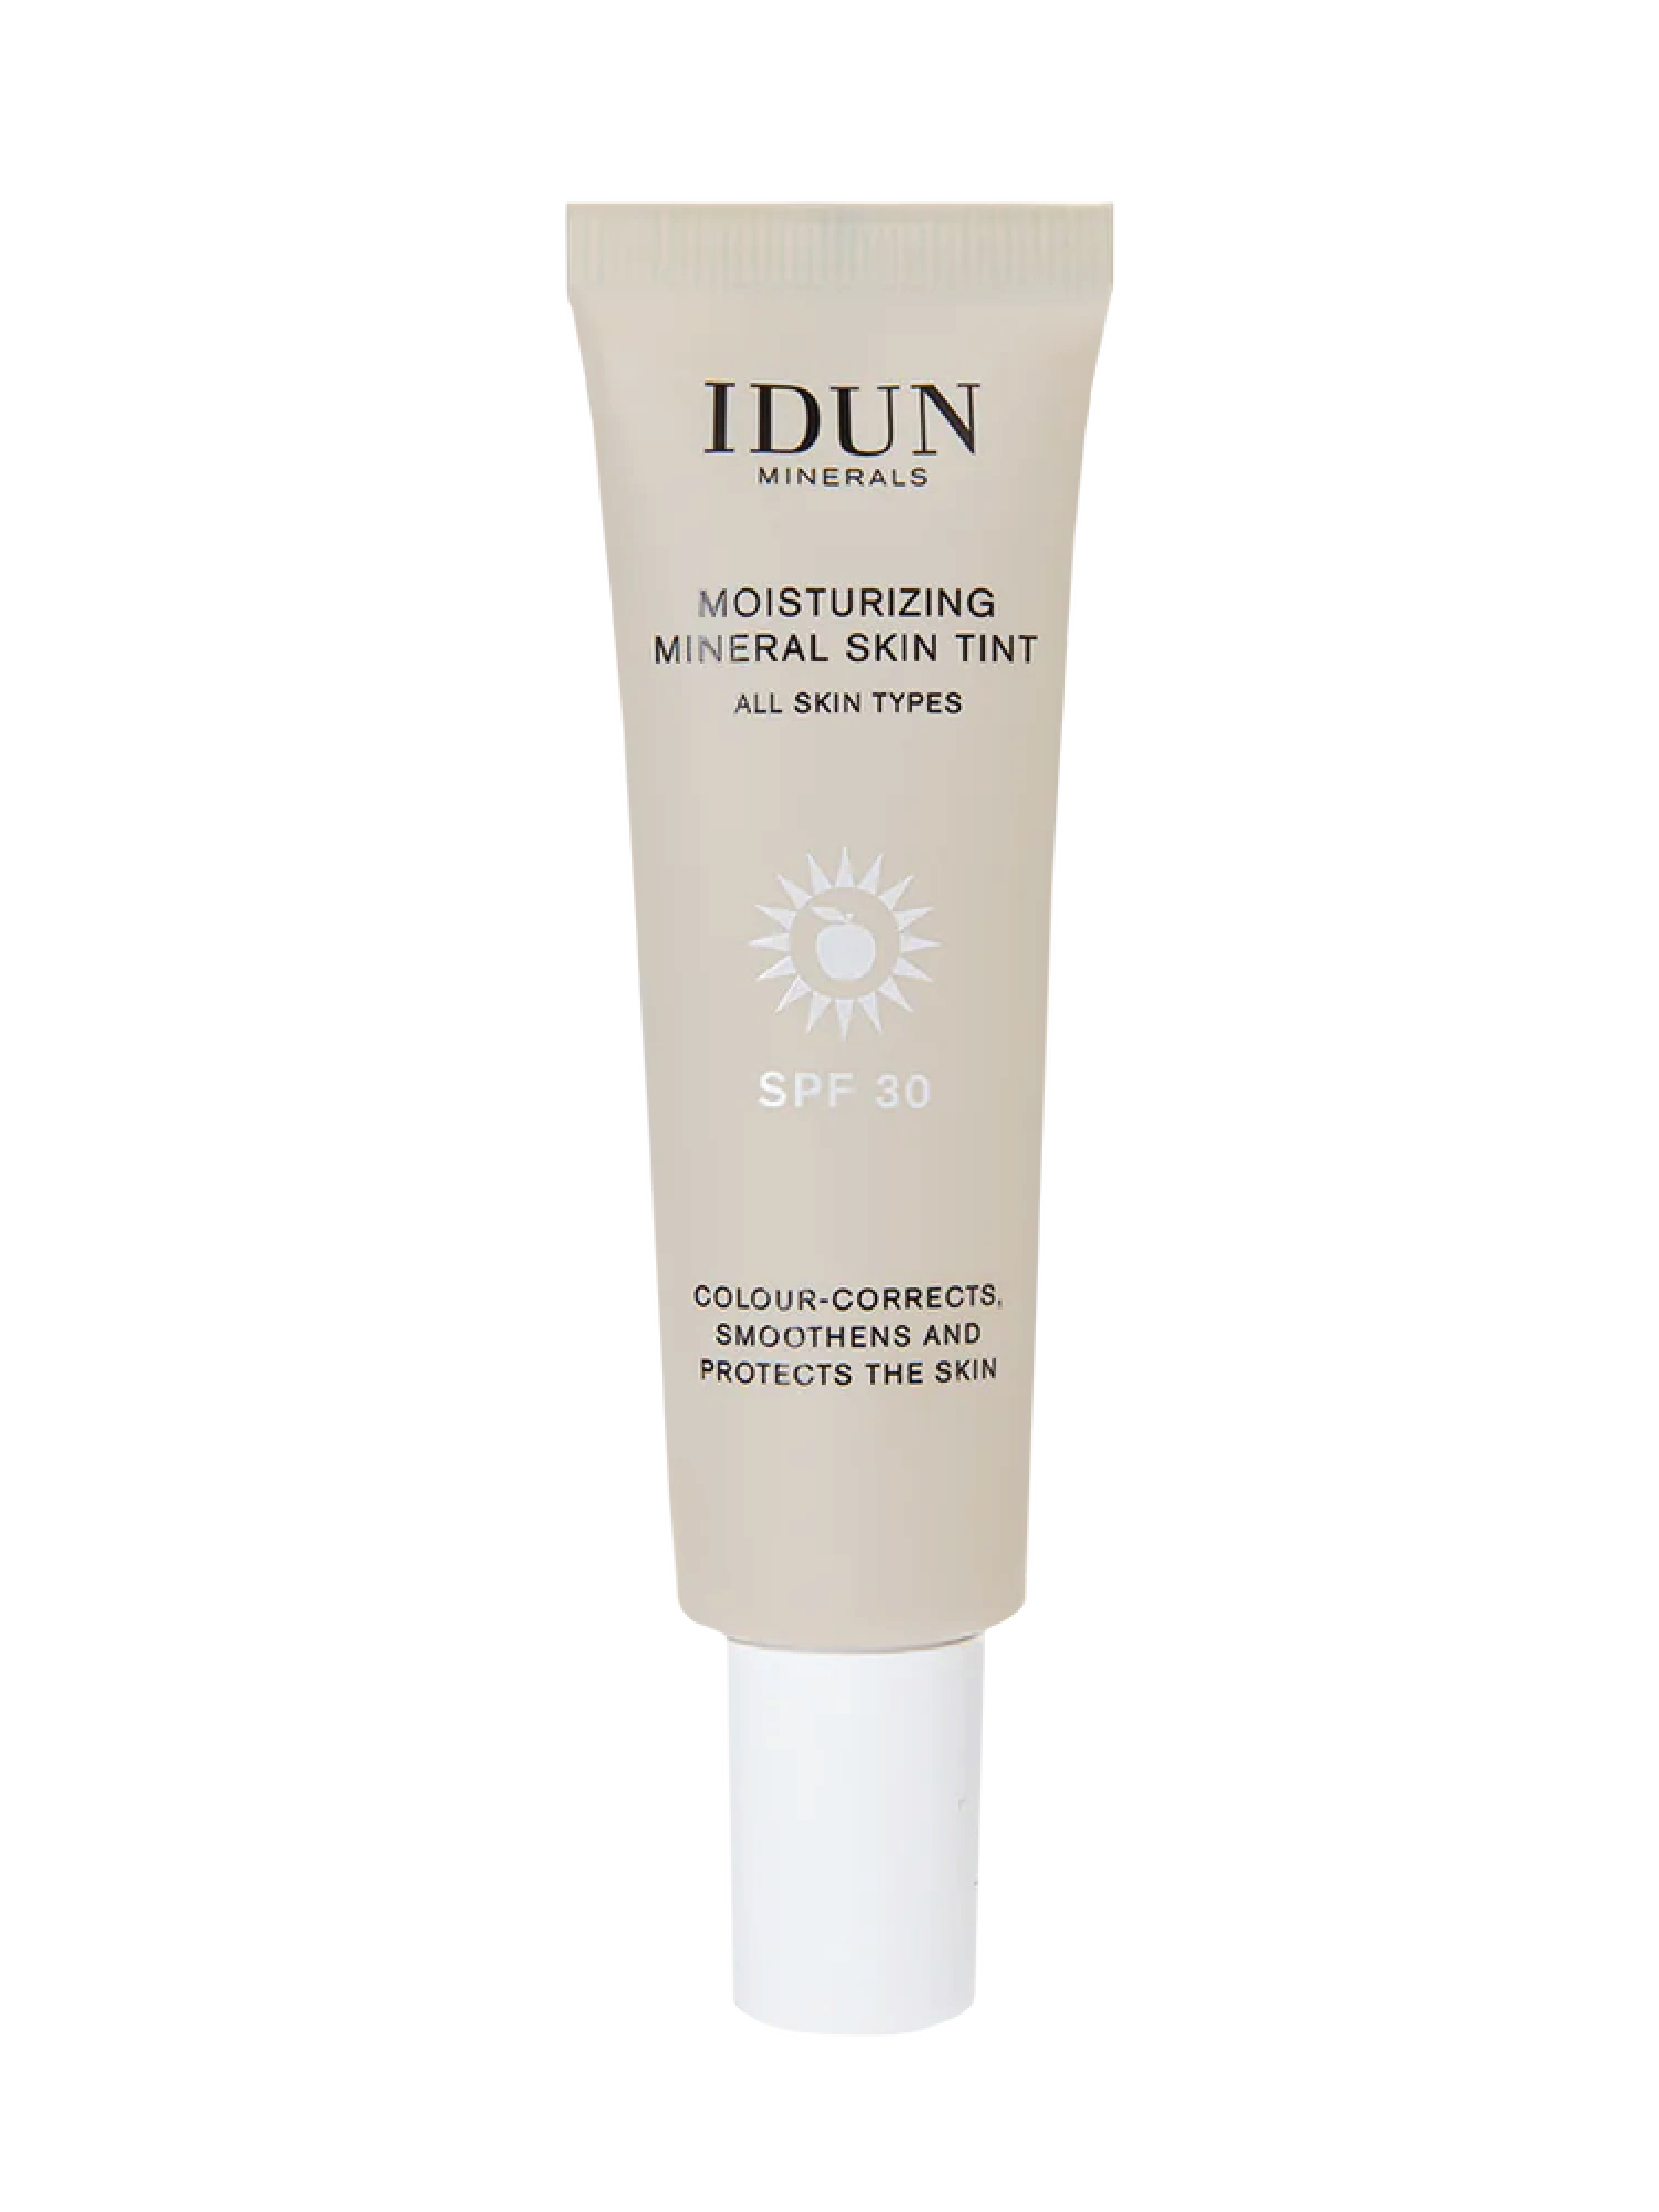 IDUN Minerals Moisturizing Mineral Skin Tint SPF 30, Tan, 27 ml